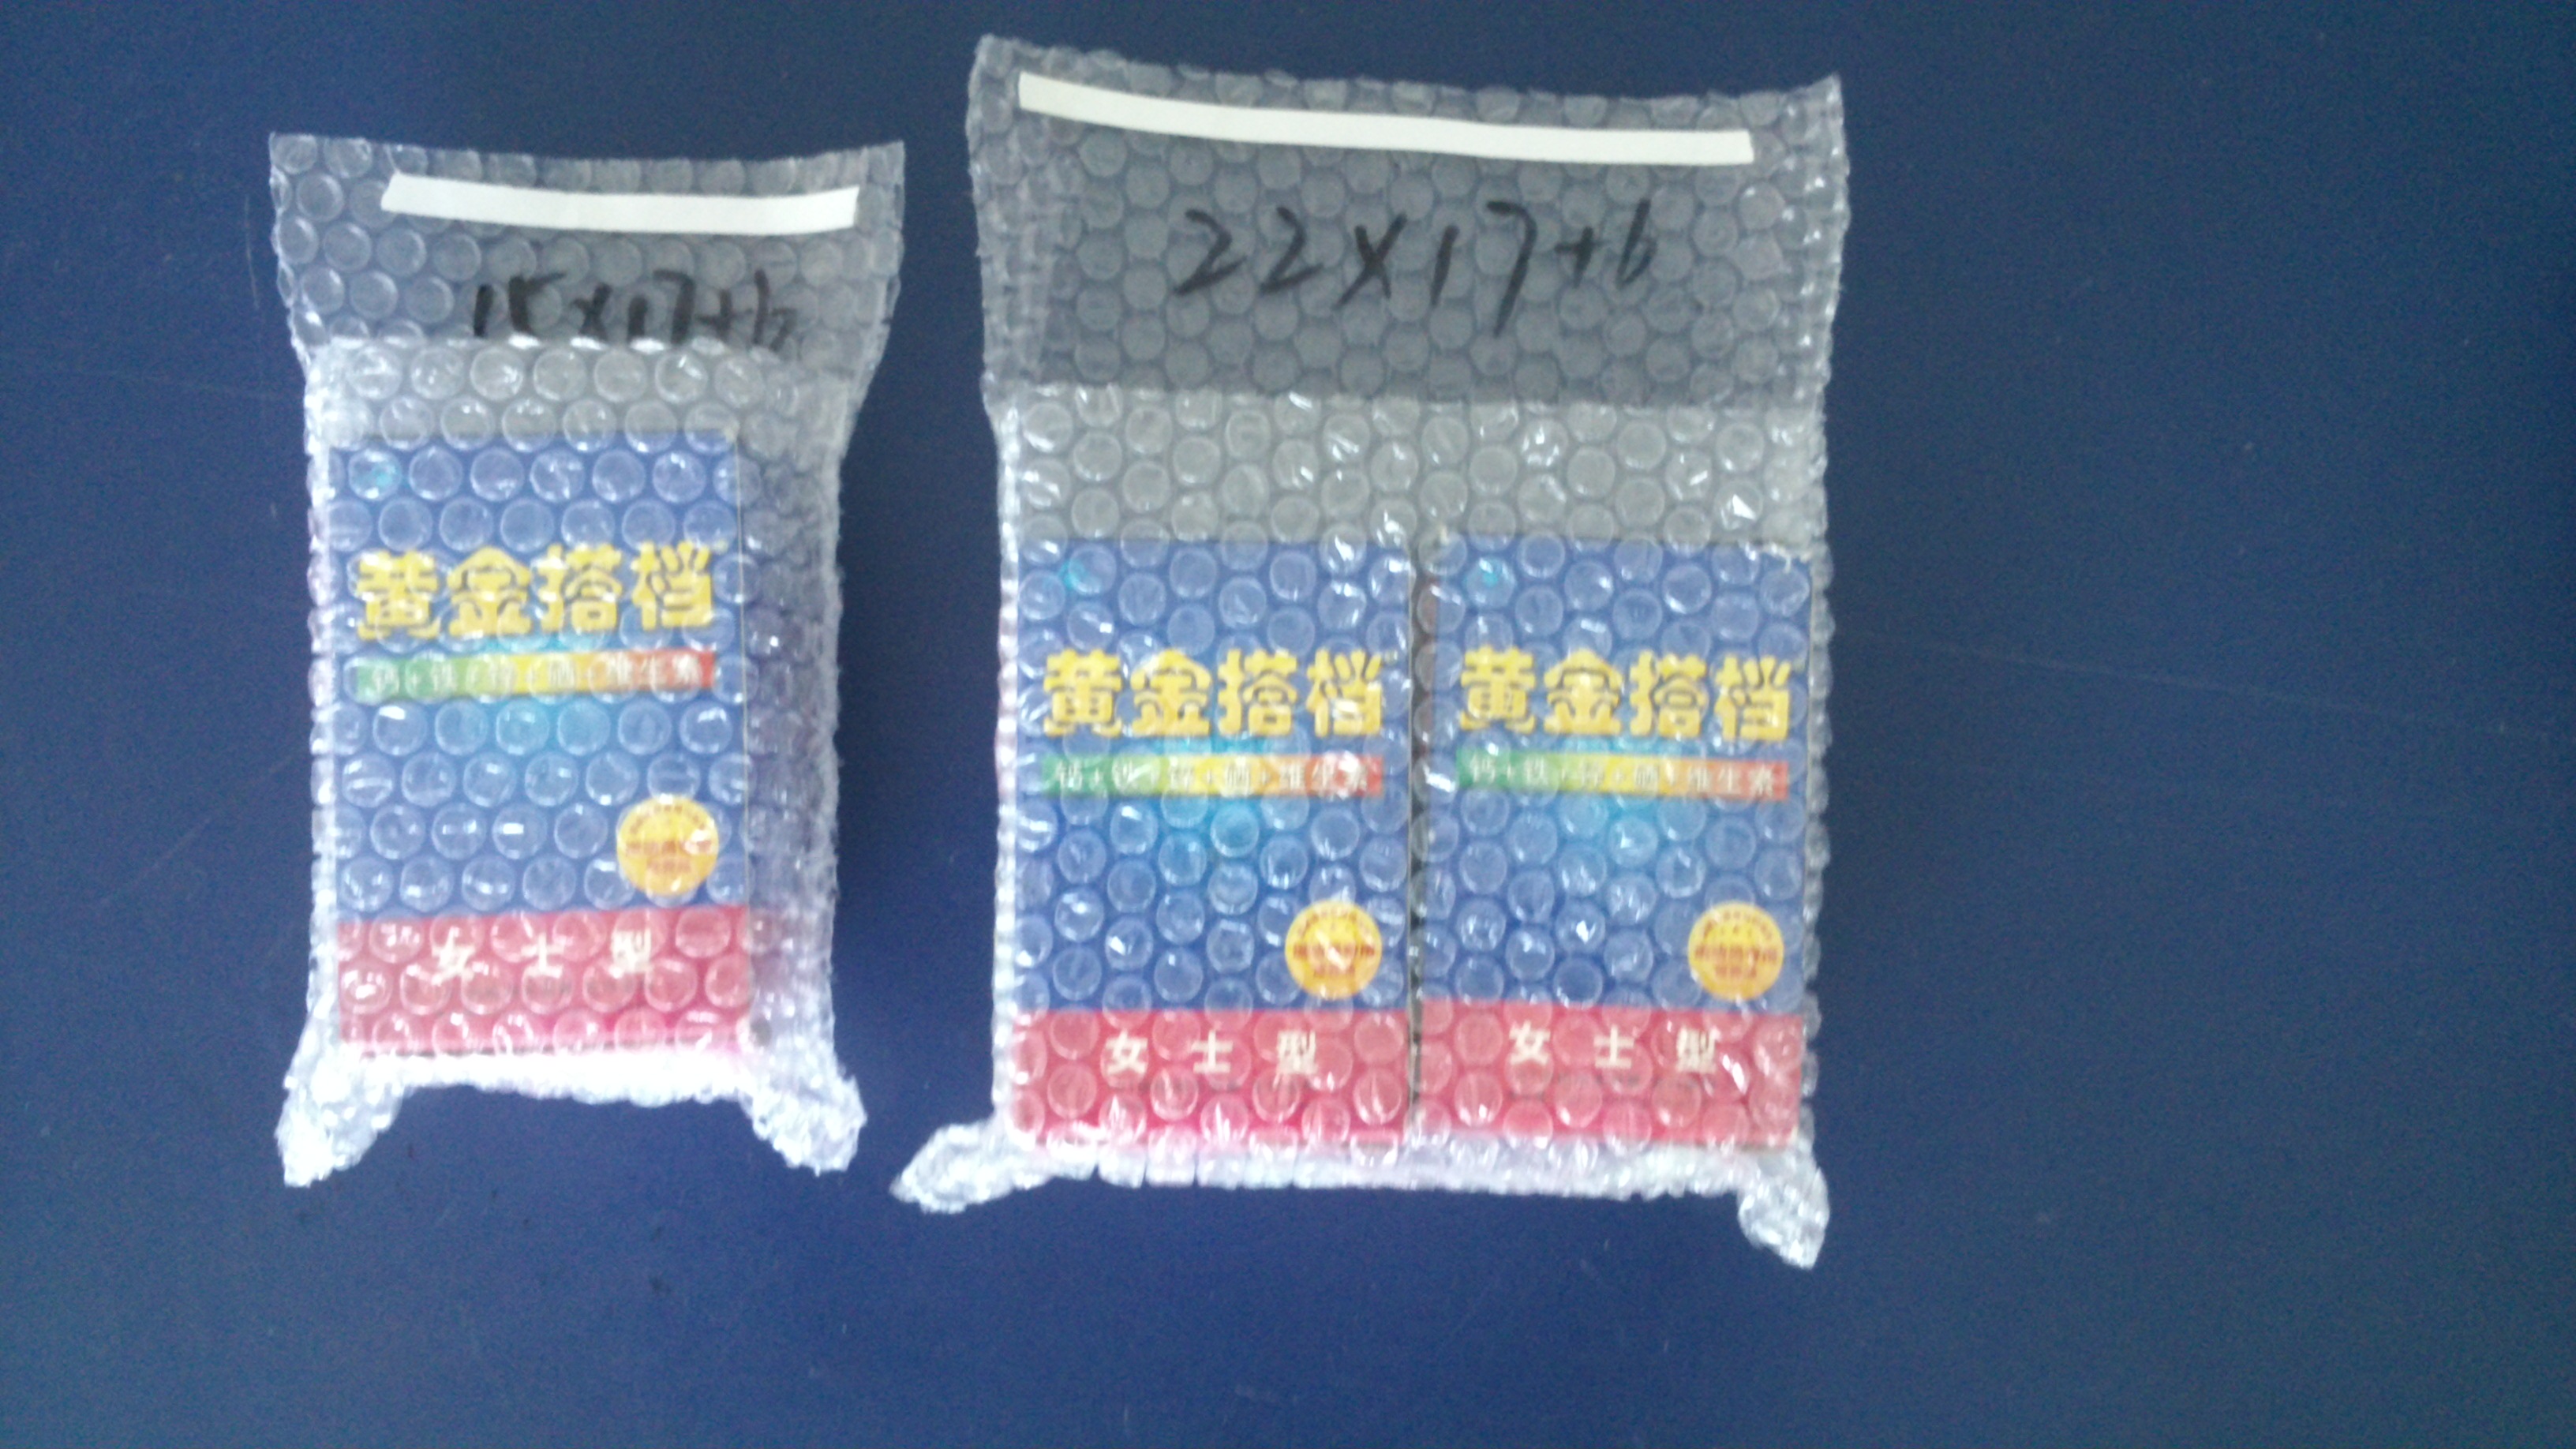 上海气泡袋厂家定制价格——上海传富包装材料——量大从优欢迎来电咨询 厂家专业定做气泡袋图片